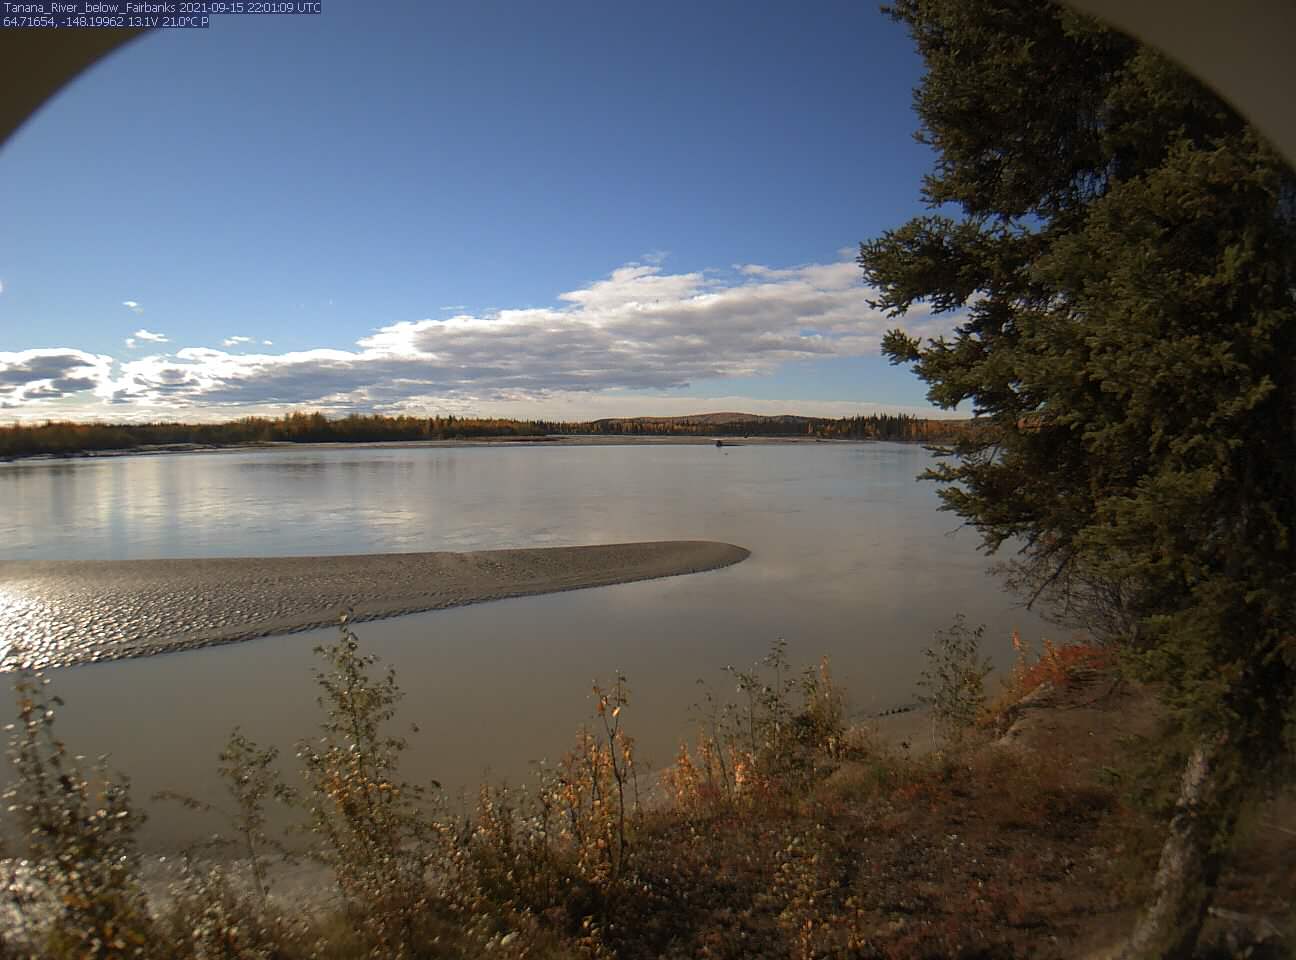 Tanana_River_below_Fairbanks_20210915220111.jpg